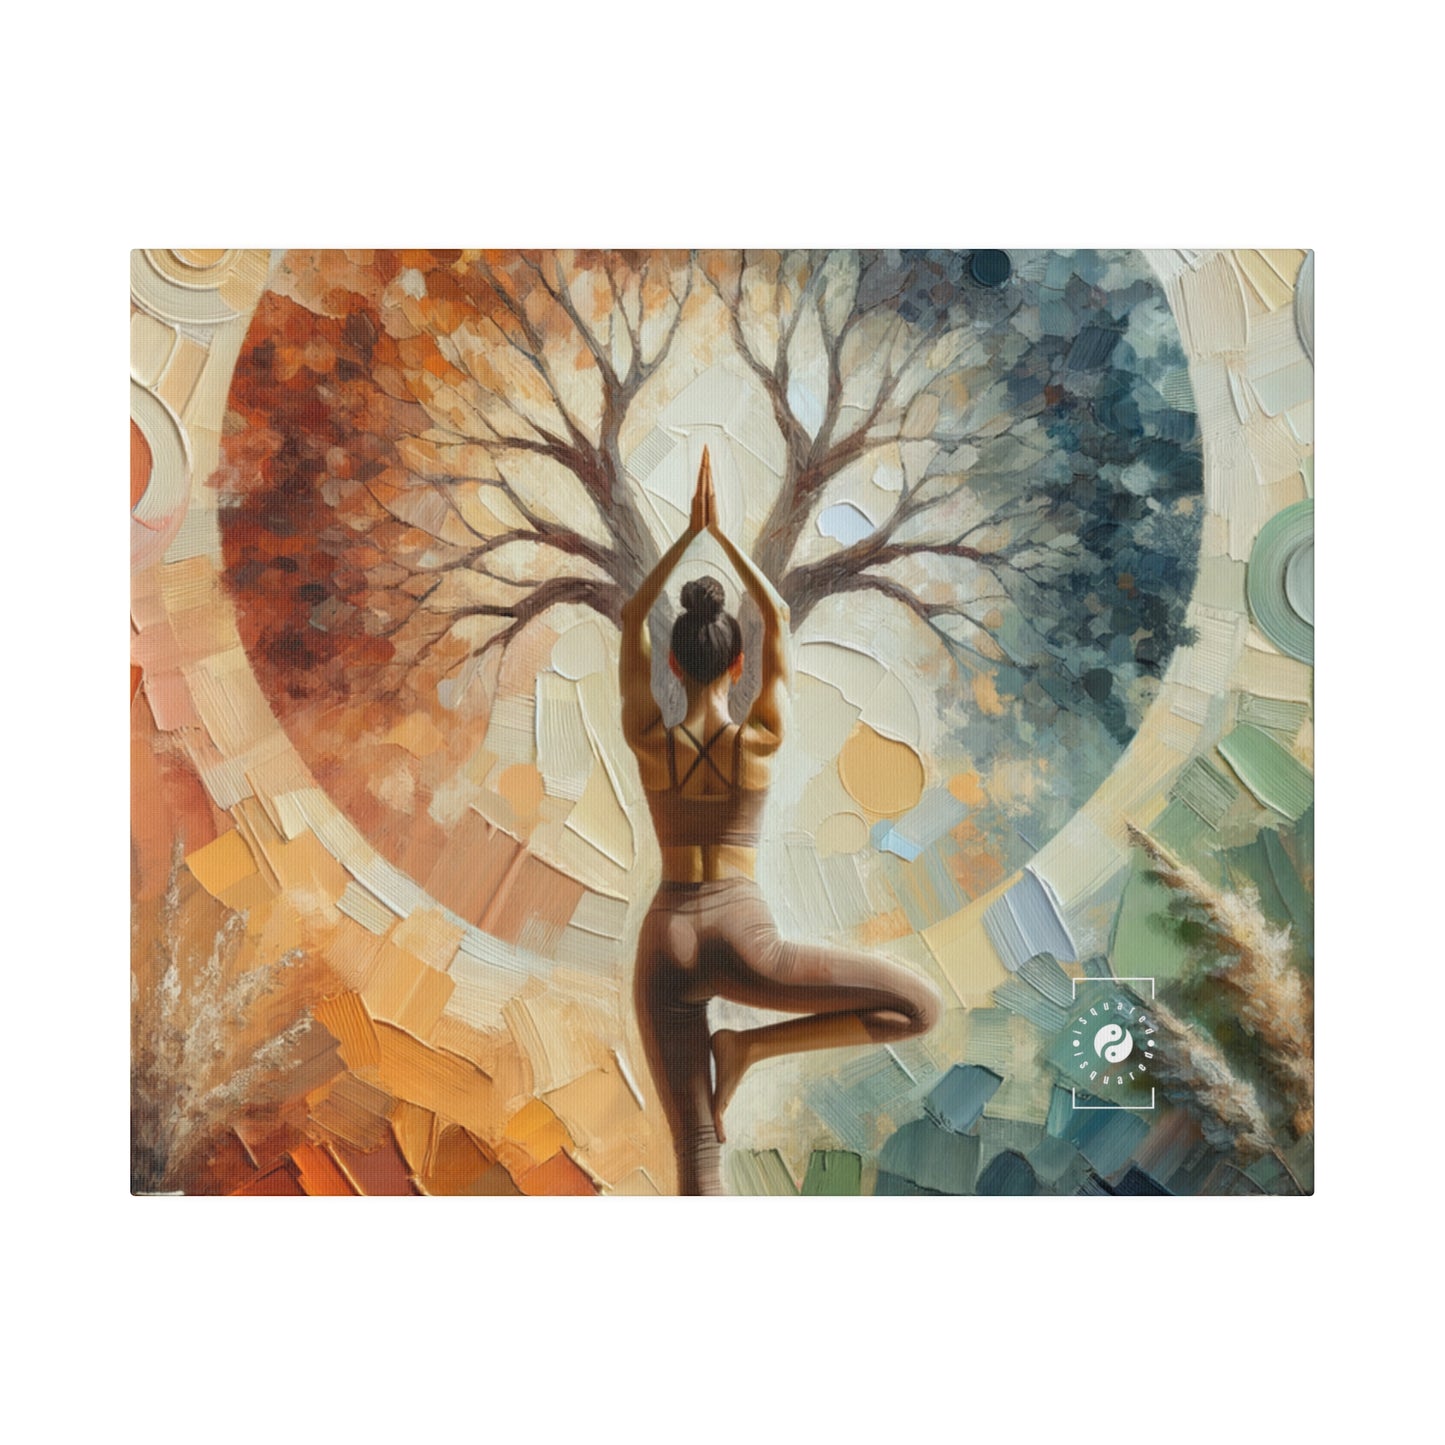 « Stabilité dans la reddition : Vrikshasana en harmonie avec la Terre » – Impression sur toile